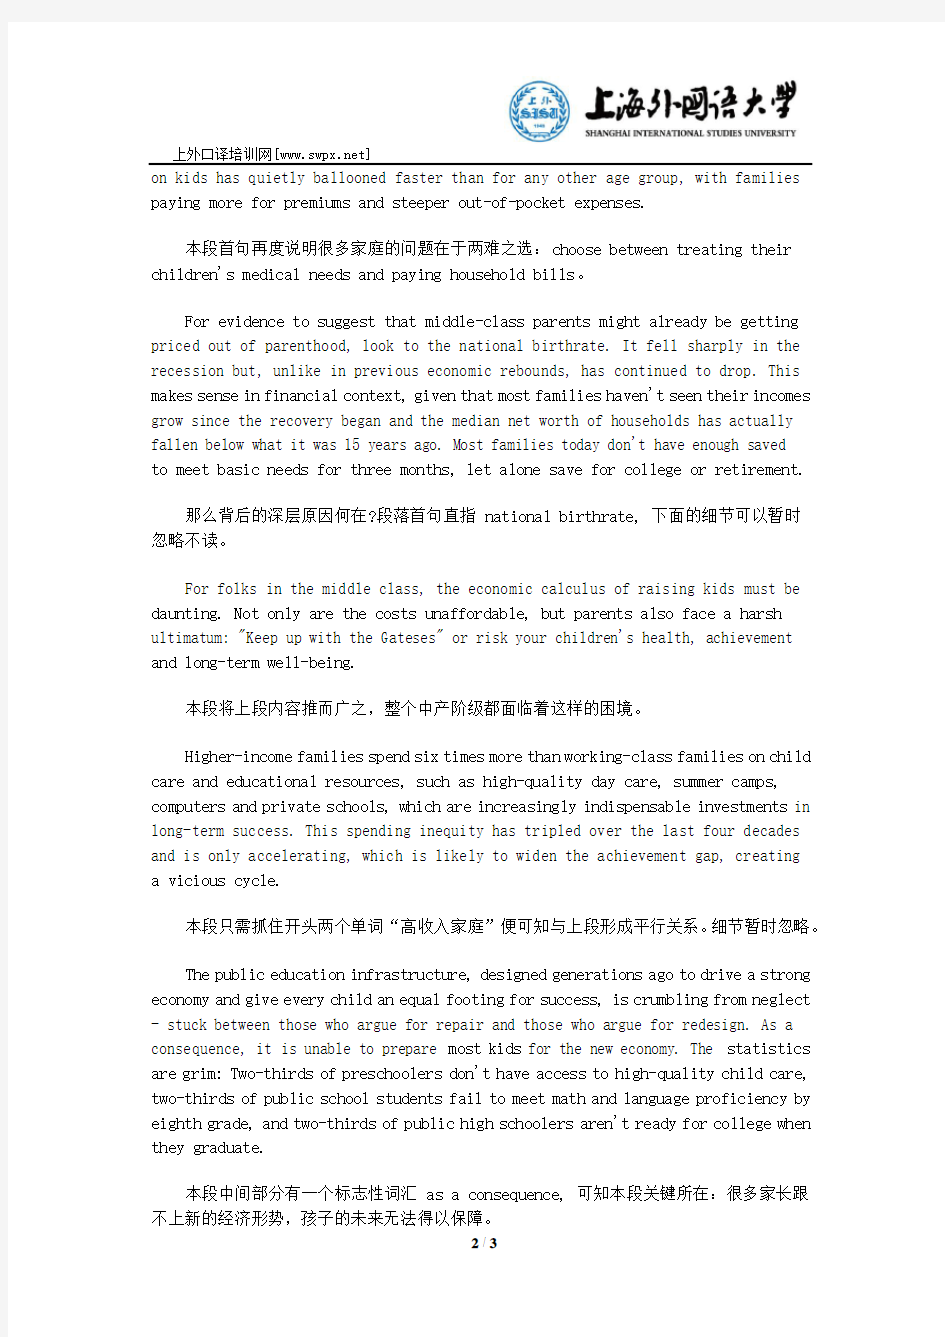 2015年3月上海高级口译考试真题(阅读部分)